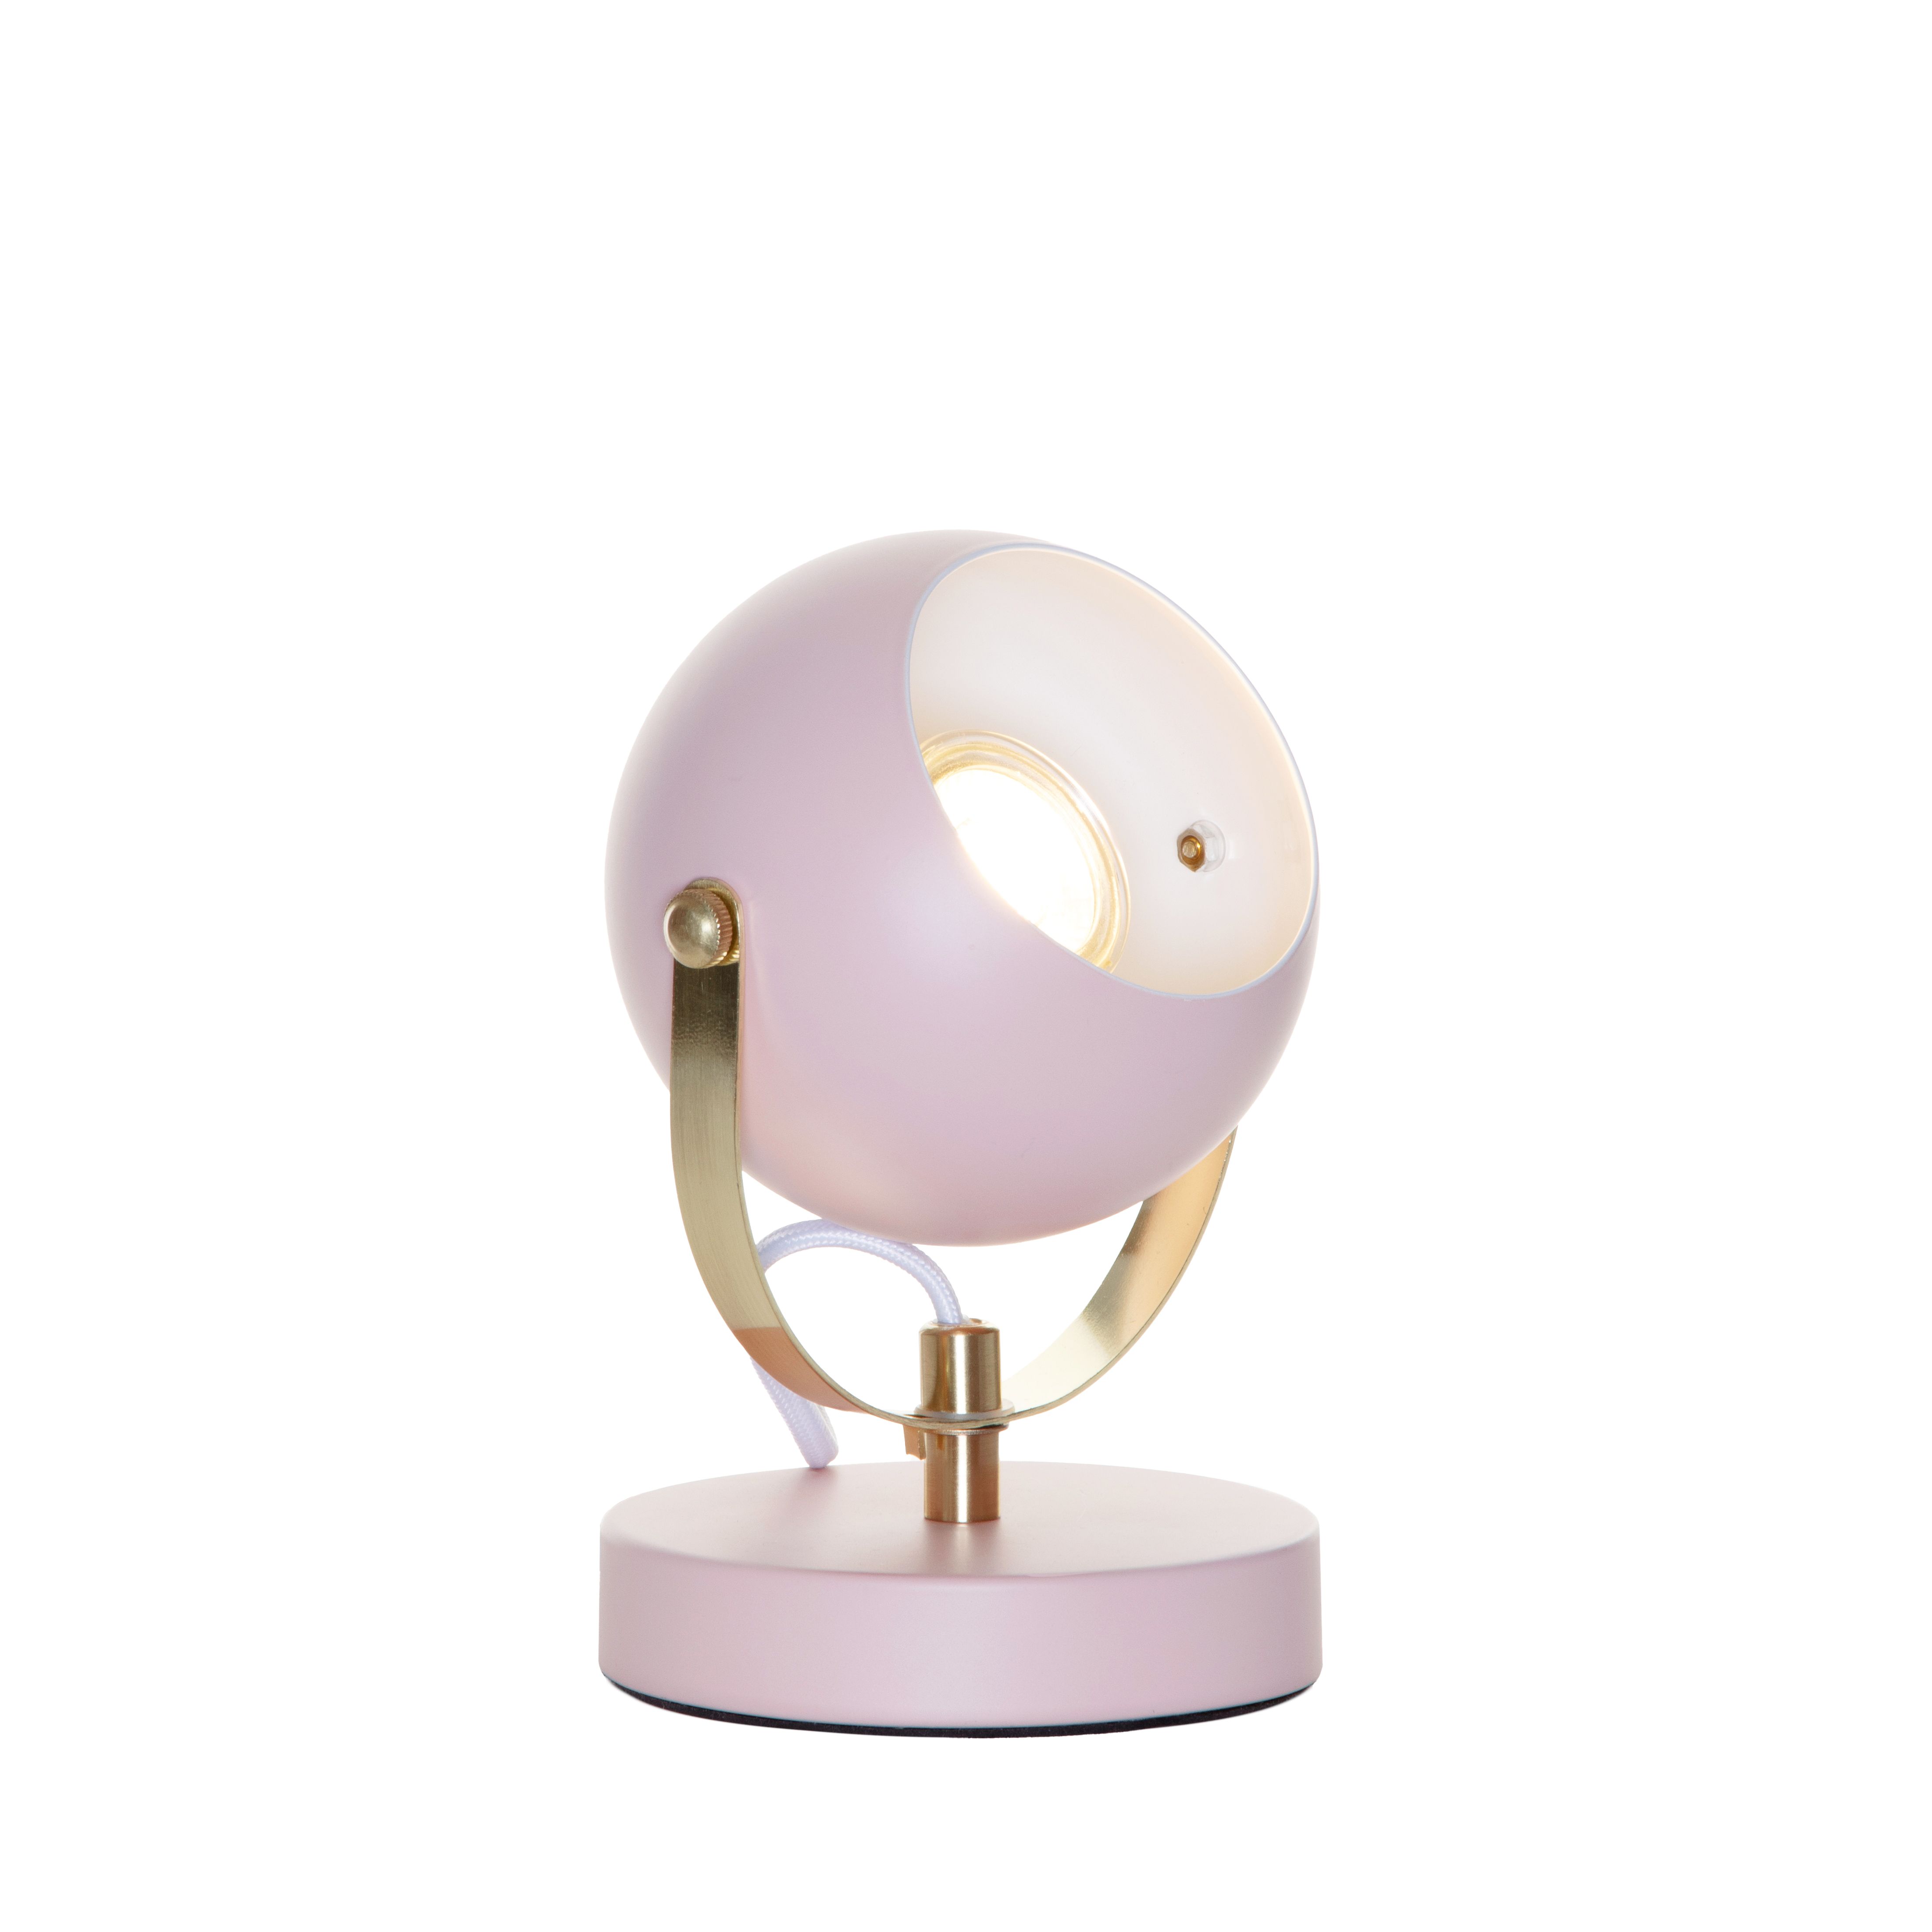 Inlight Azure Retro Matt Pink Round Table lamp